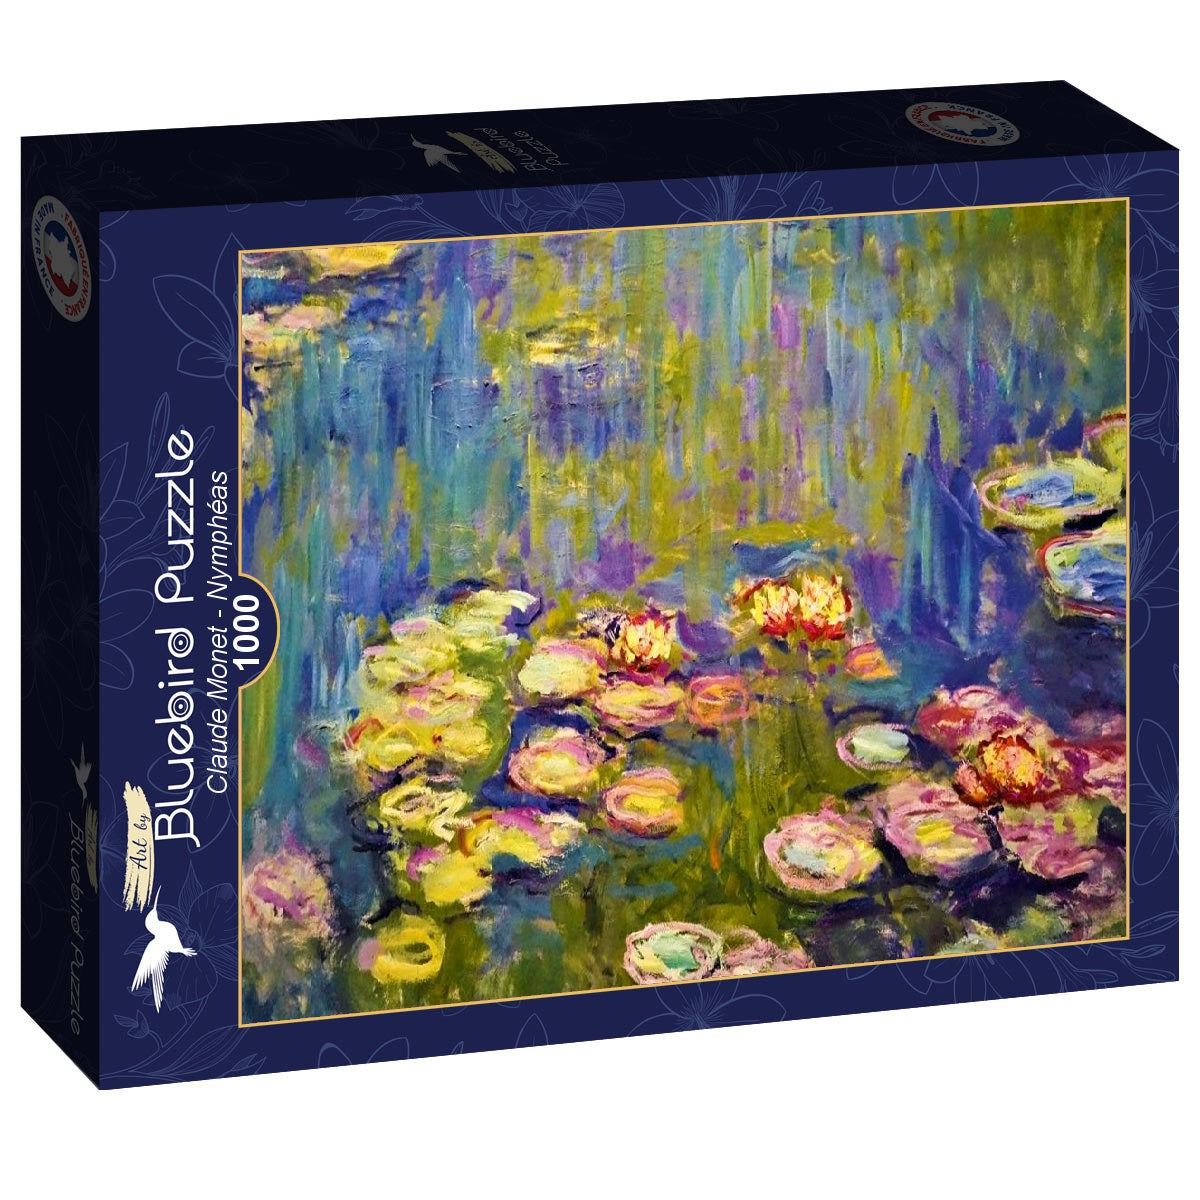 Bluebird - Claude Monet - Nymphéas - 1000 piece jigsaw puzzle